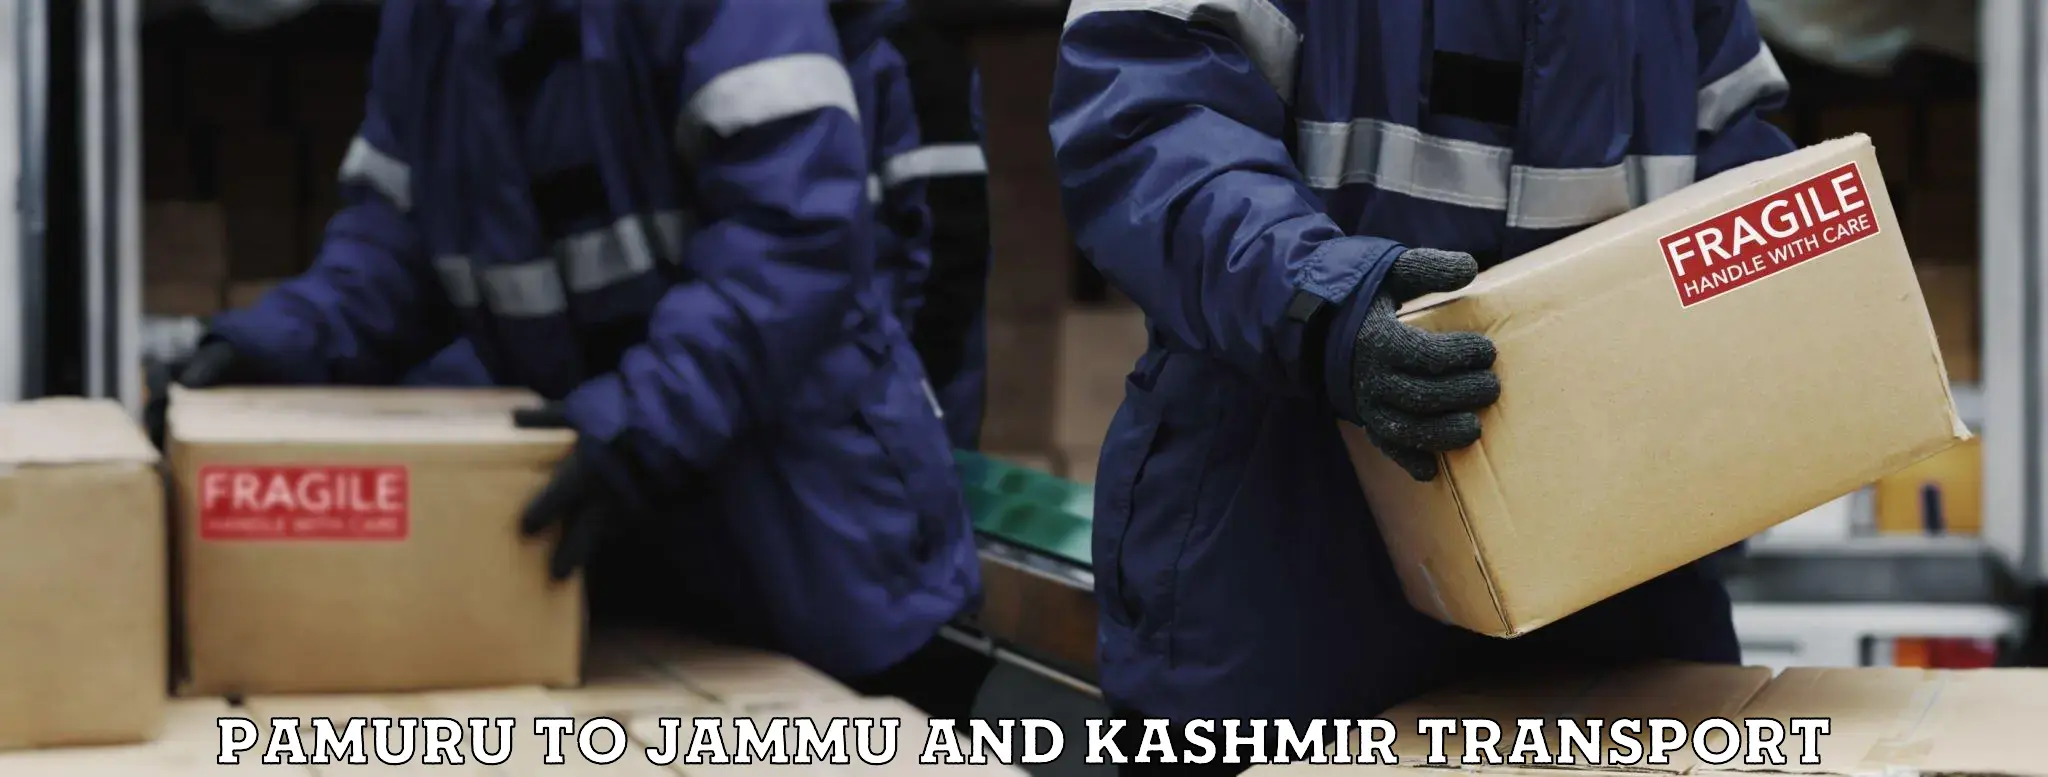 All India transport service Pamuru to Jammu and Kashmir